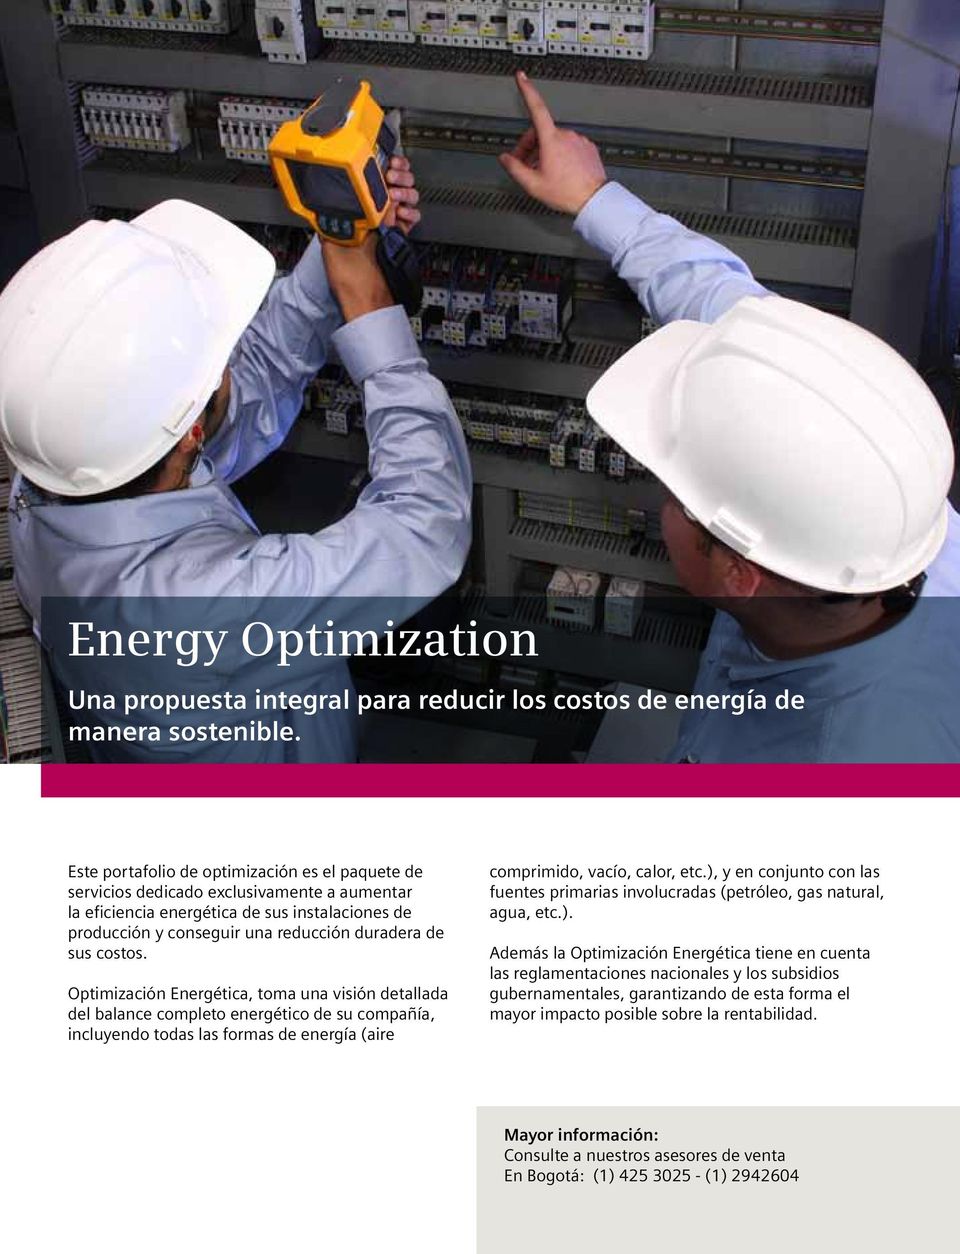 costos. Optimización Energética, toma una visión detallada del balance completo energético de su compañía, incluyendo todas las formas de energía (aire comprimido, vacío, calor, etc.